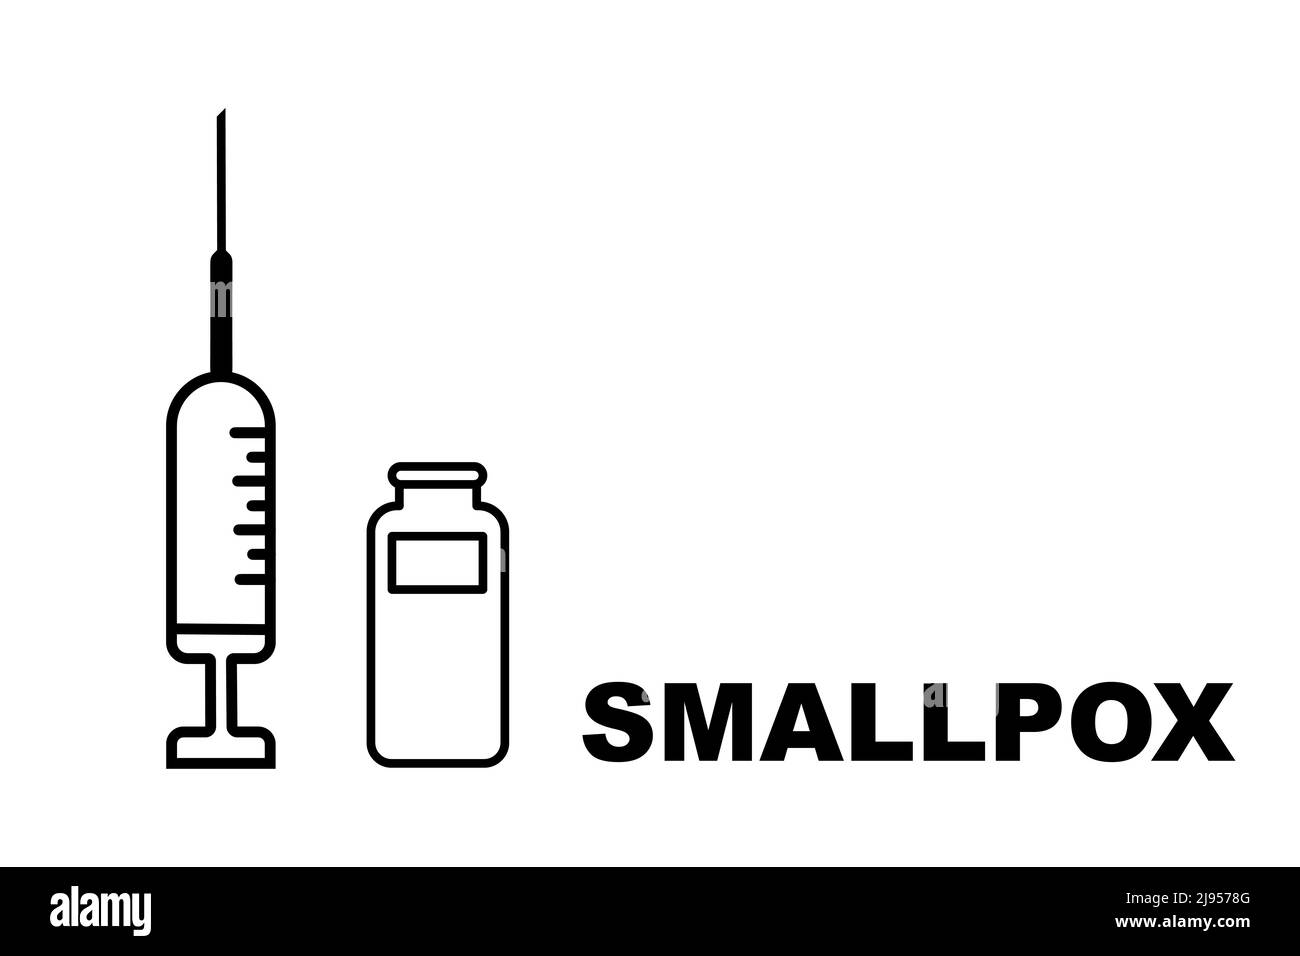 Impfstoff. Monkeypox. Pockenimpfstoff. Design eines Impfstoffs mit der Injektion, der Spritze und dem Fläschchen. Impfstoff gegen Pocken. Illustratives Design. Stockfoto